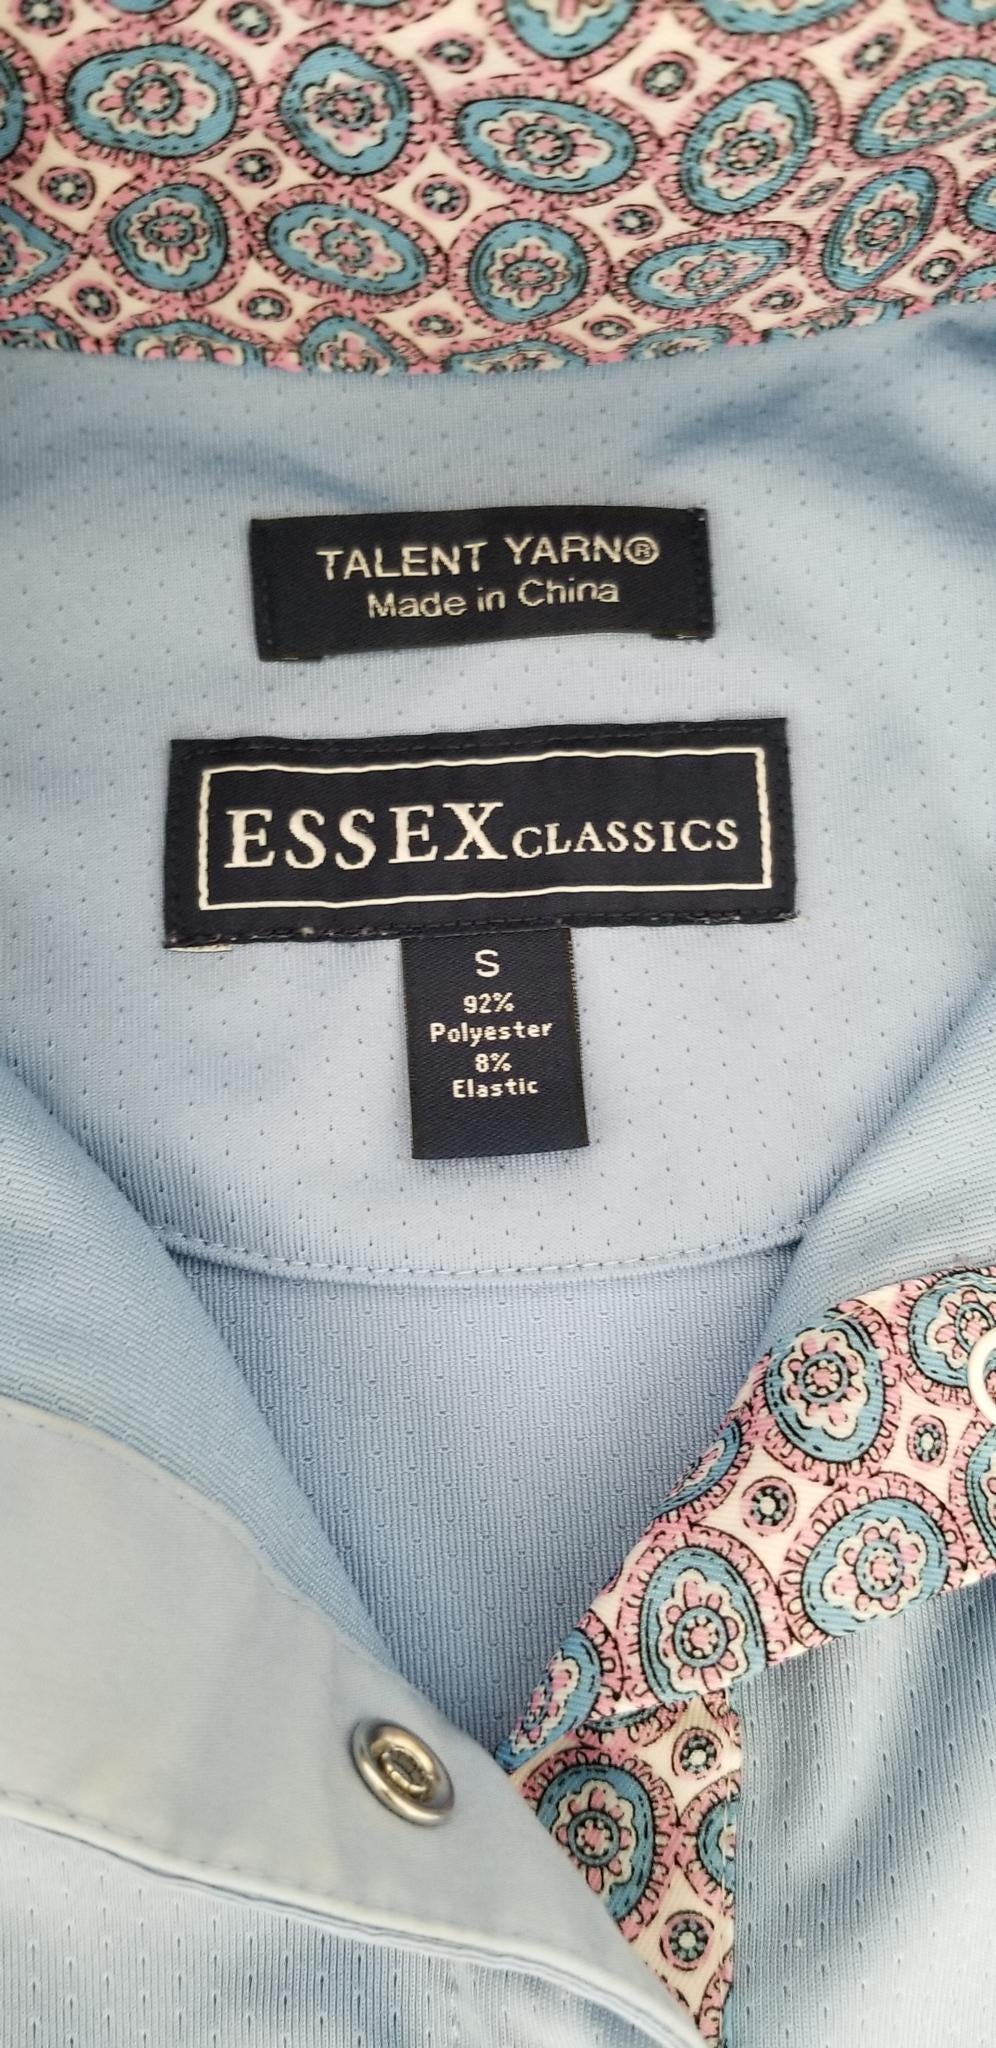 Essex Classics Talent Yarn Show Shirt - Blue - Women's Small